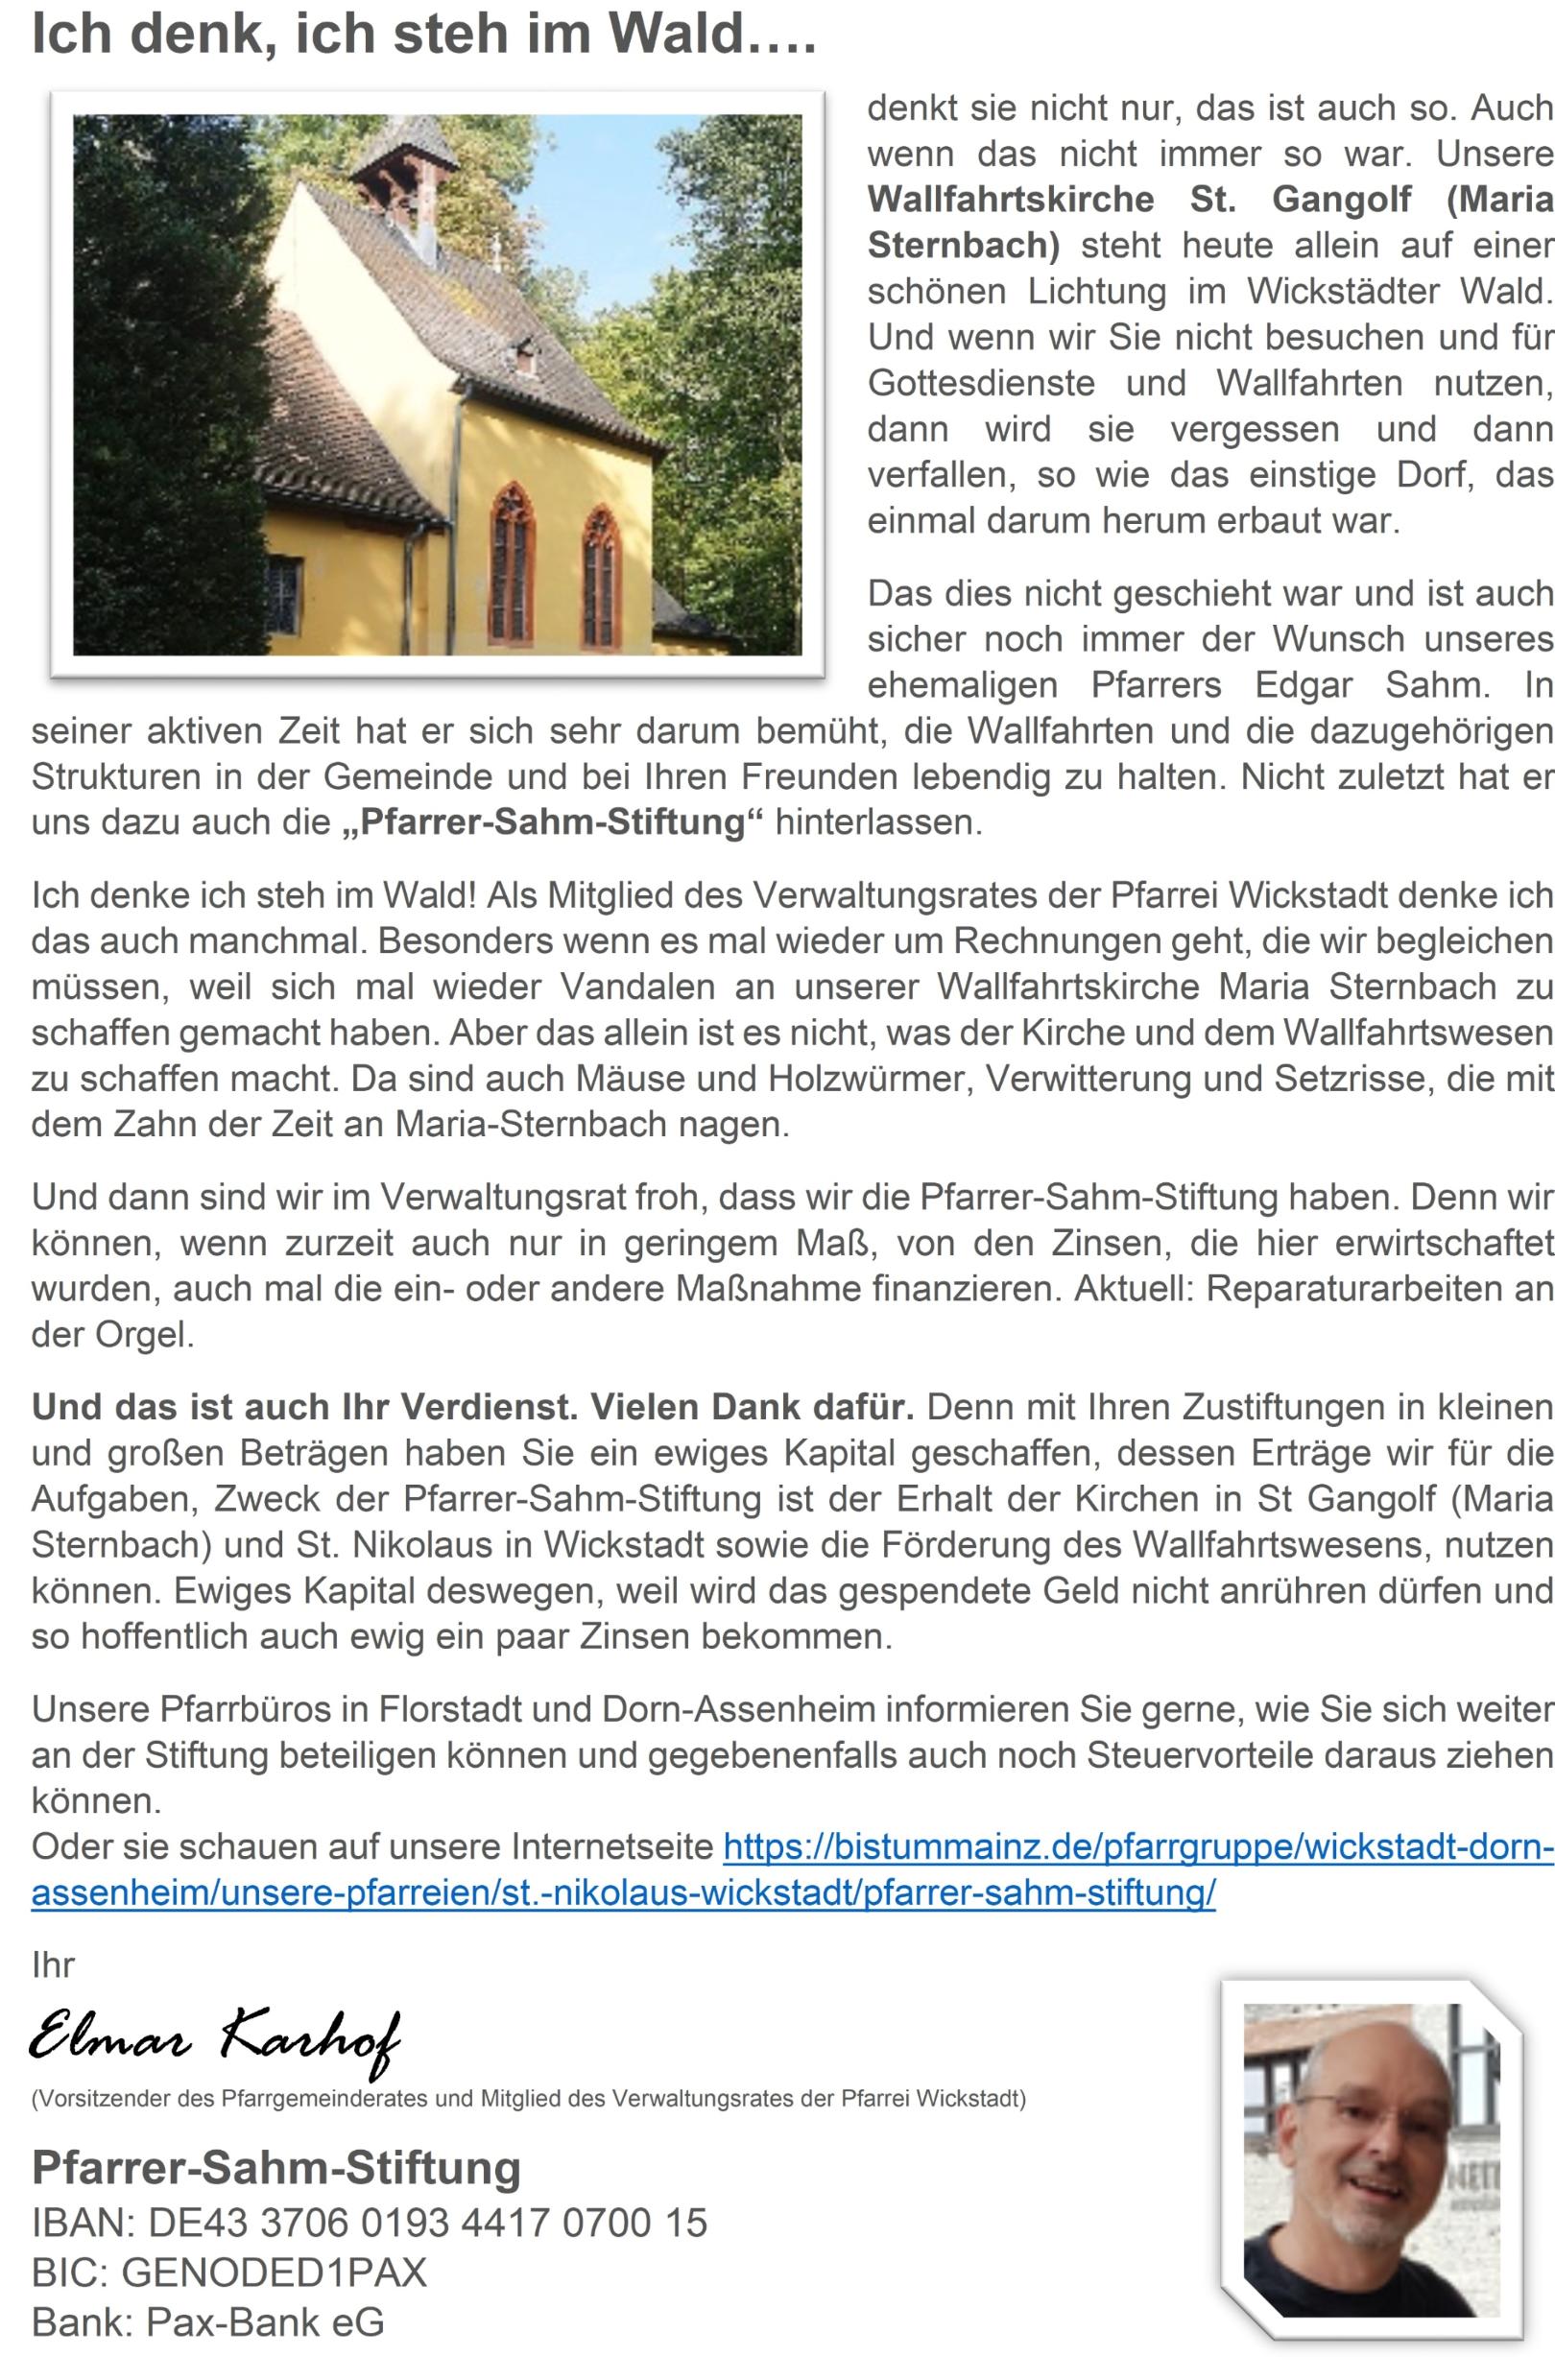 Werbung Pfarrer-Sahm-Stiftung (c) Pfarrgruppe Wickstadt/Dorn-Assenheim